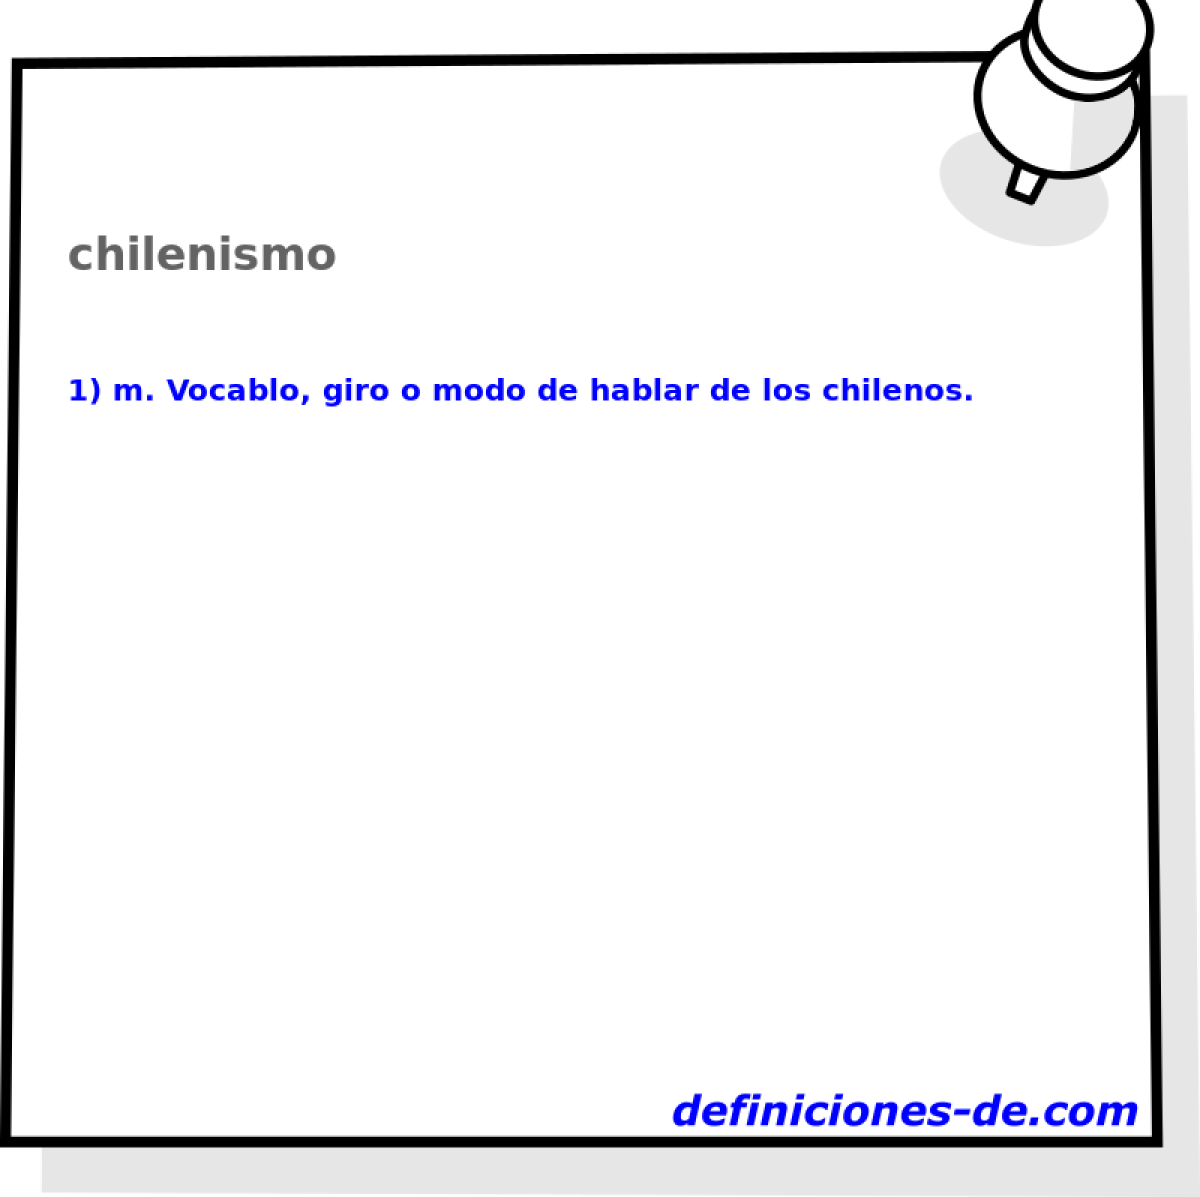 chilenismo 